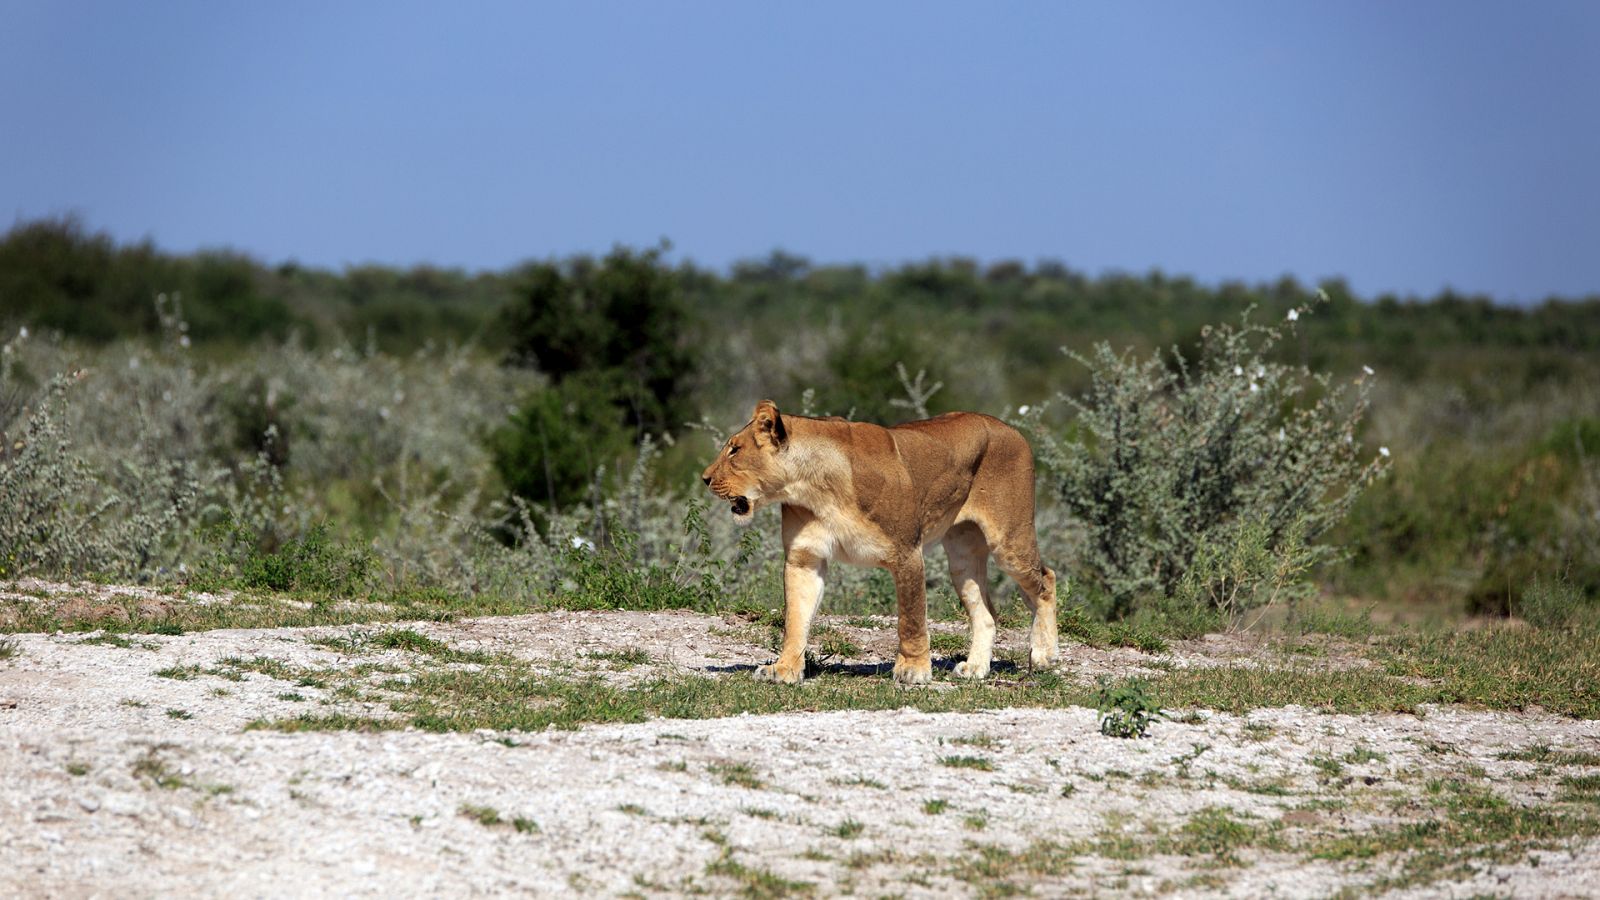 Somos documentales - Los leones del desierto - Documental en RTVE